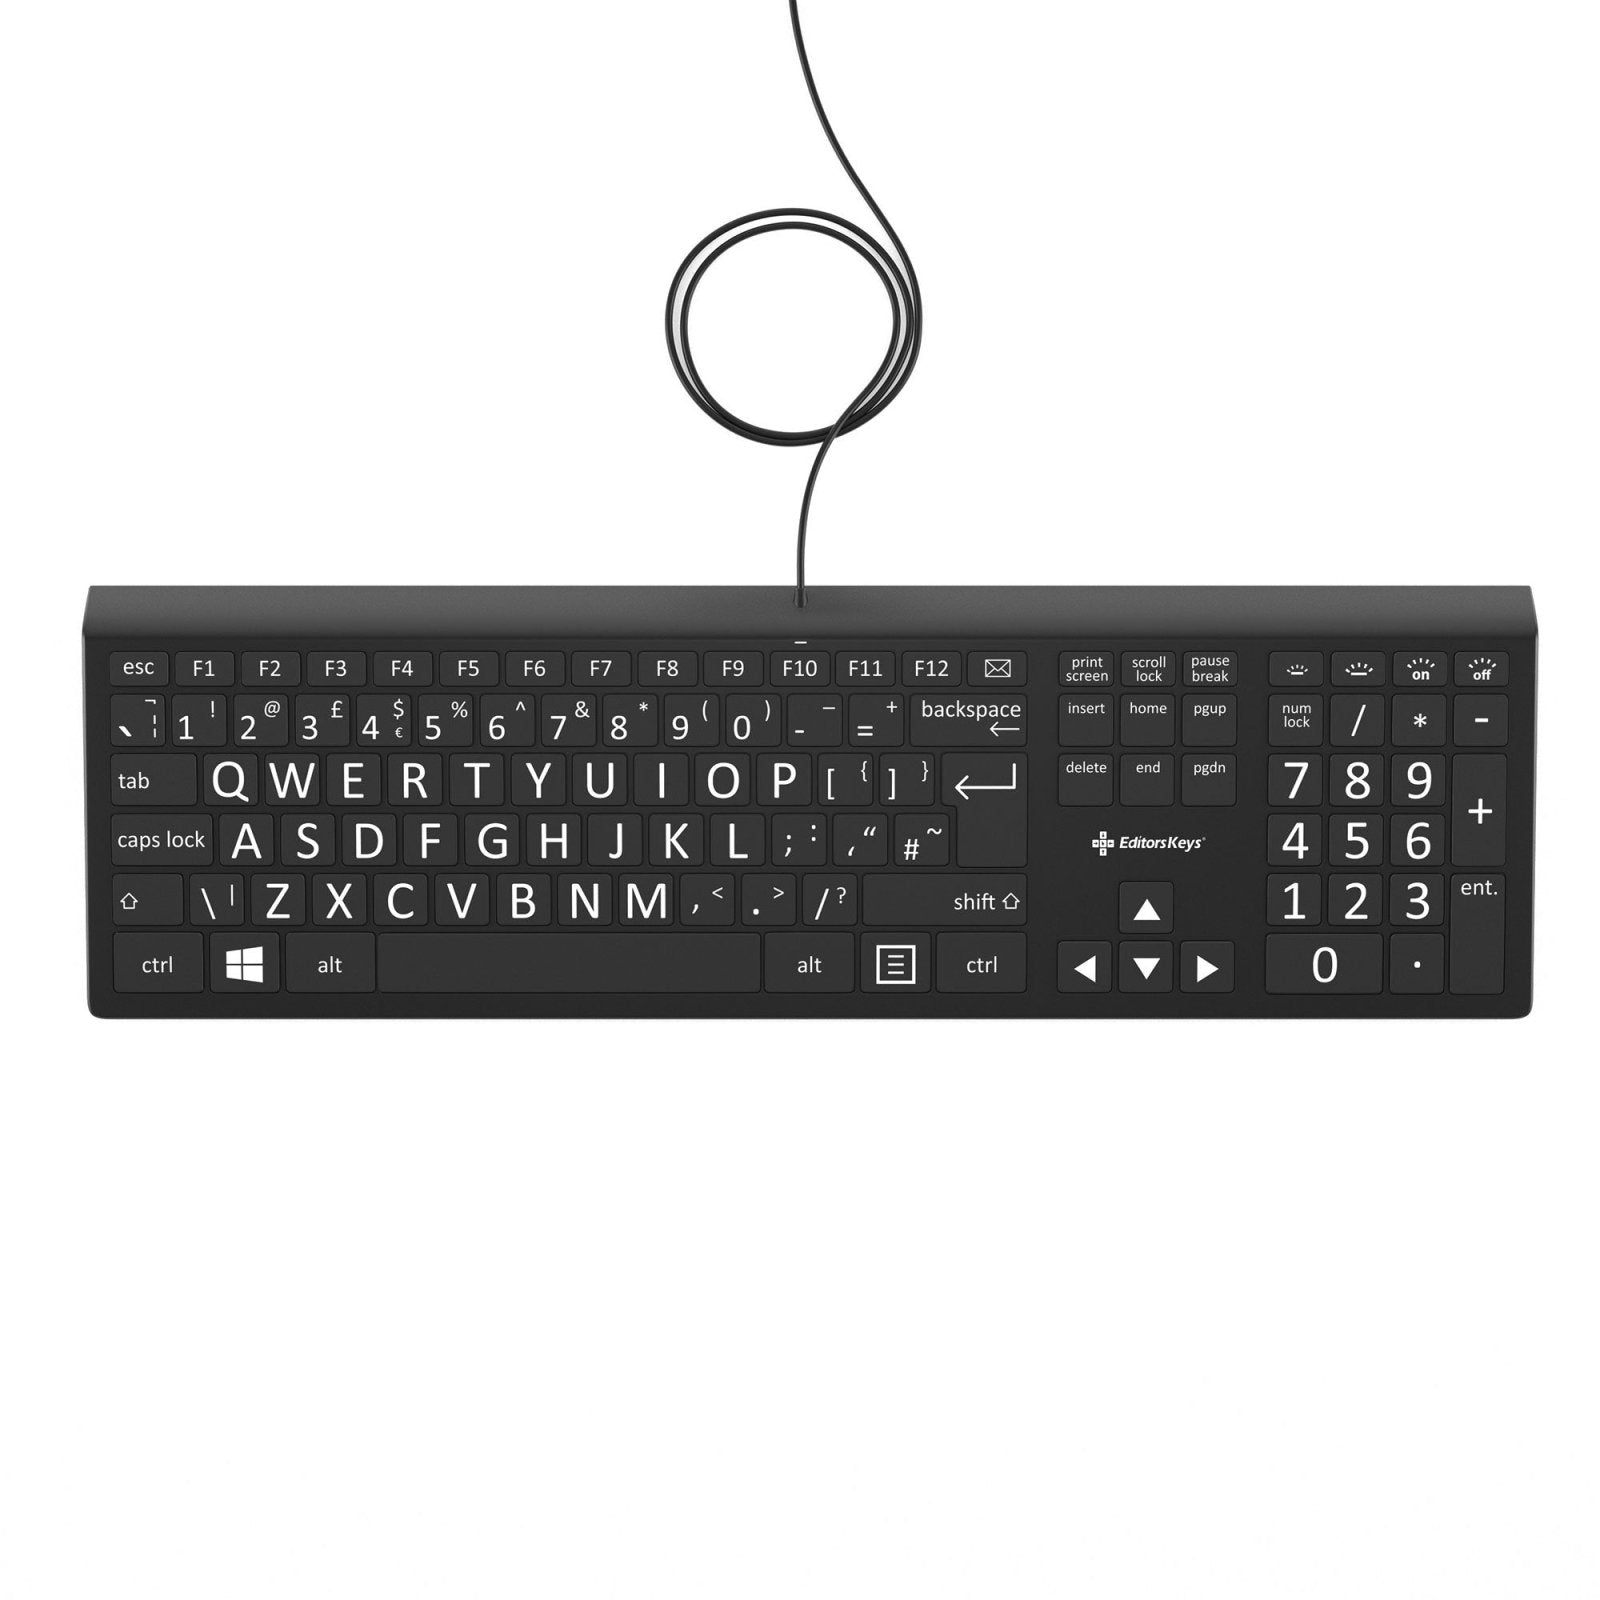 High Contrast Black and White Keys on Large Print Backlit Keyboard